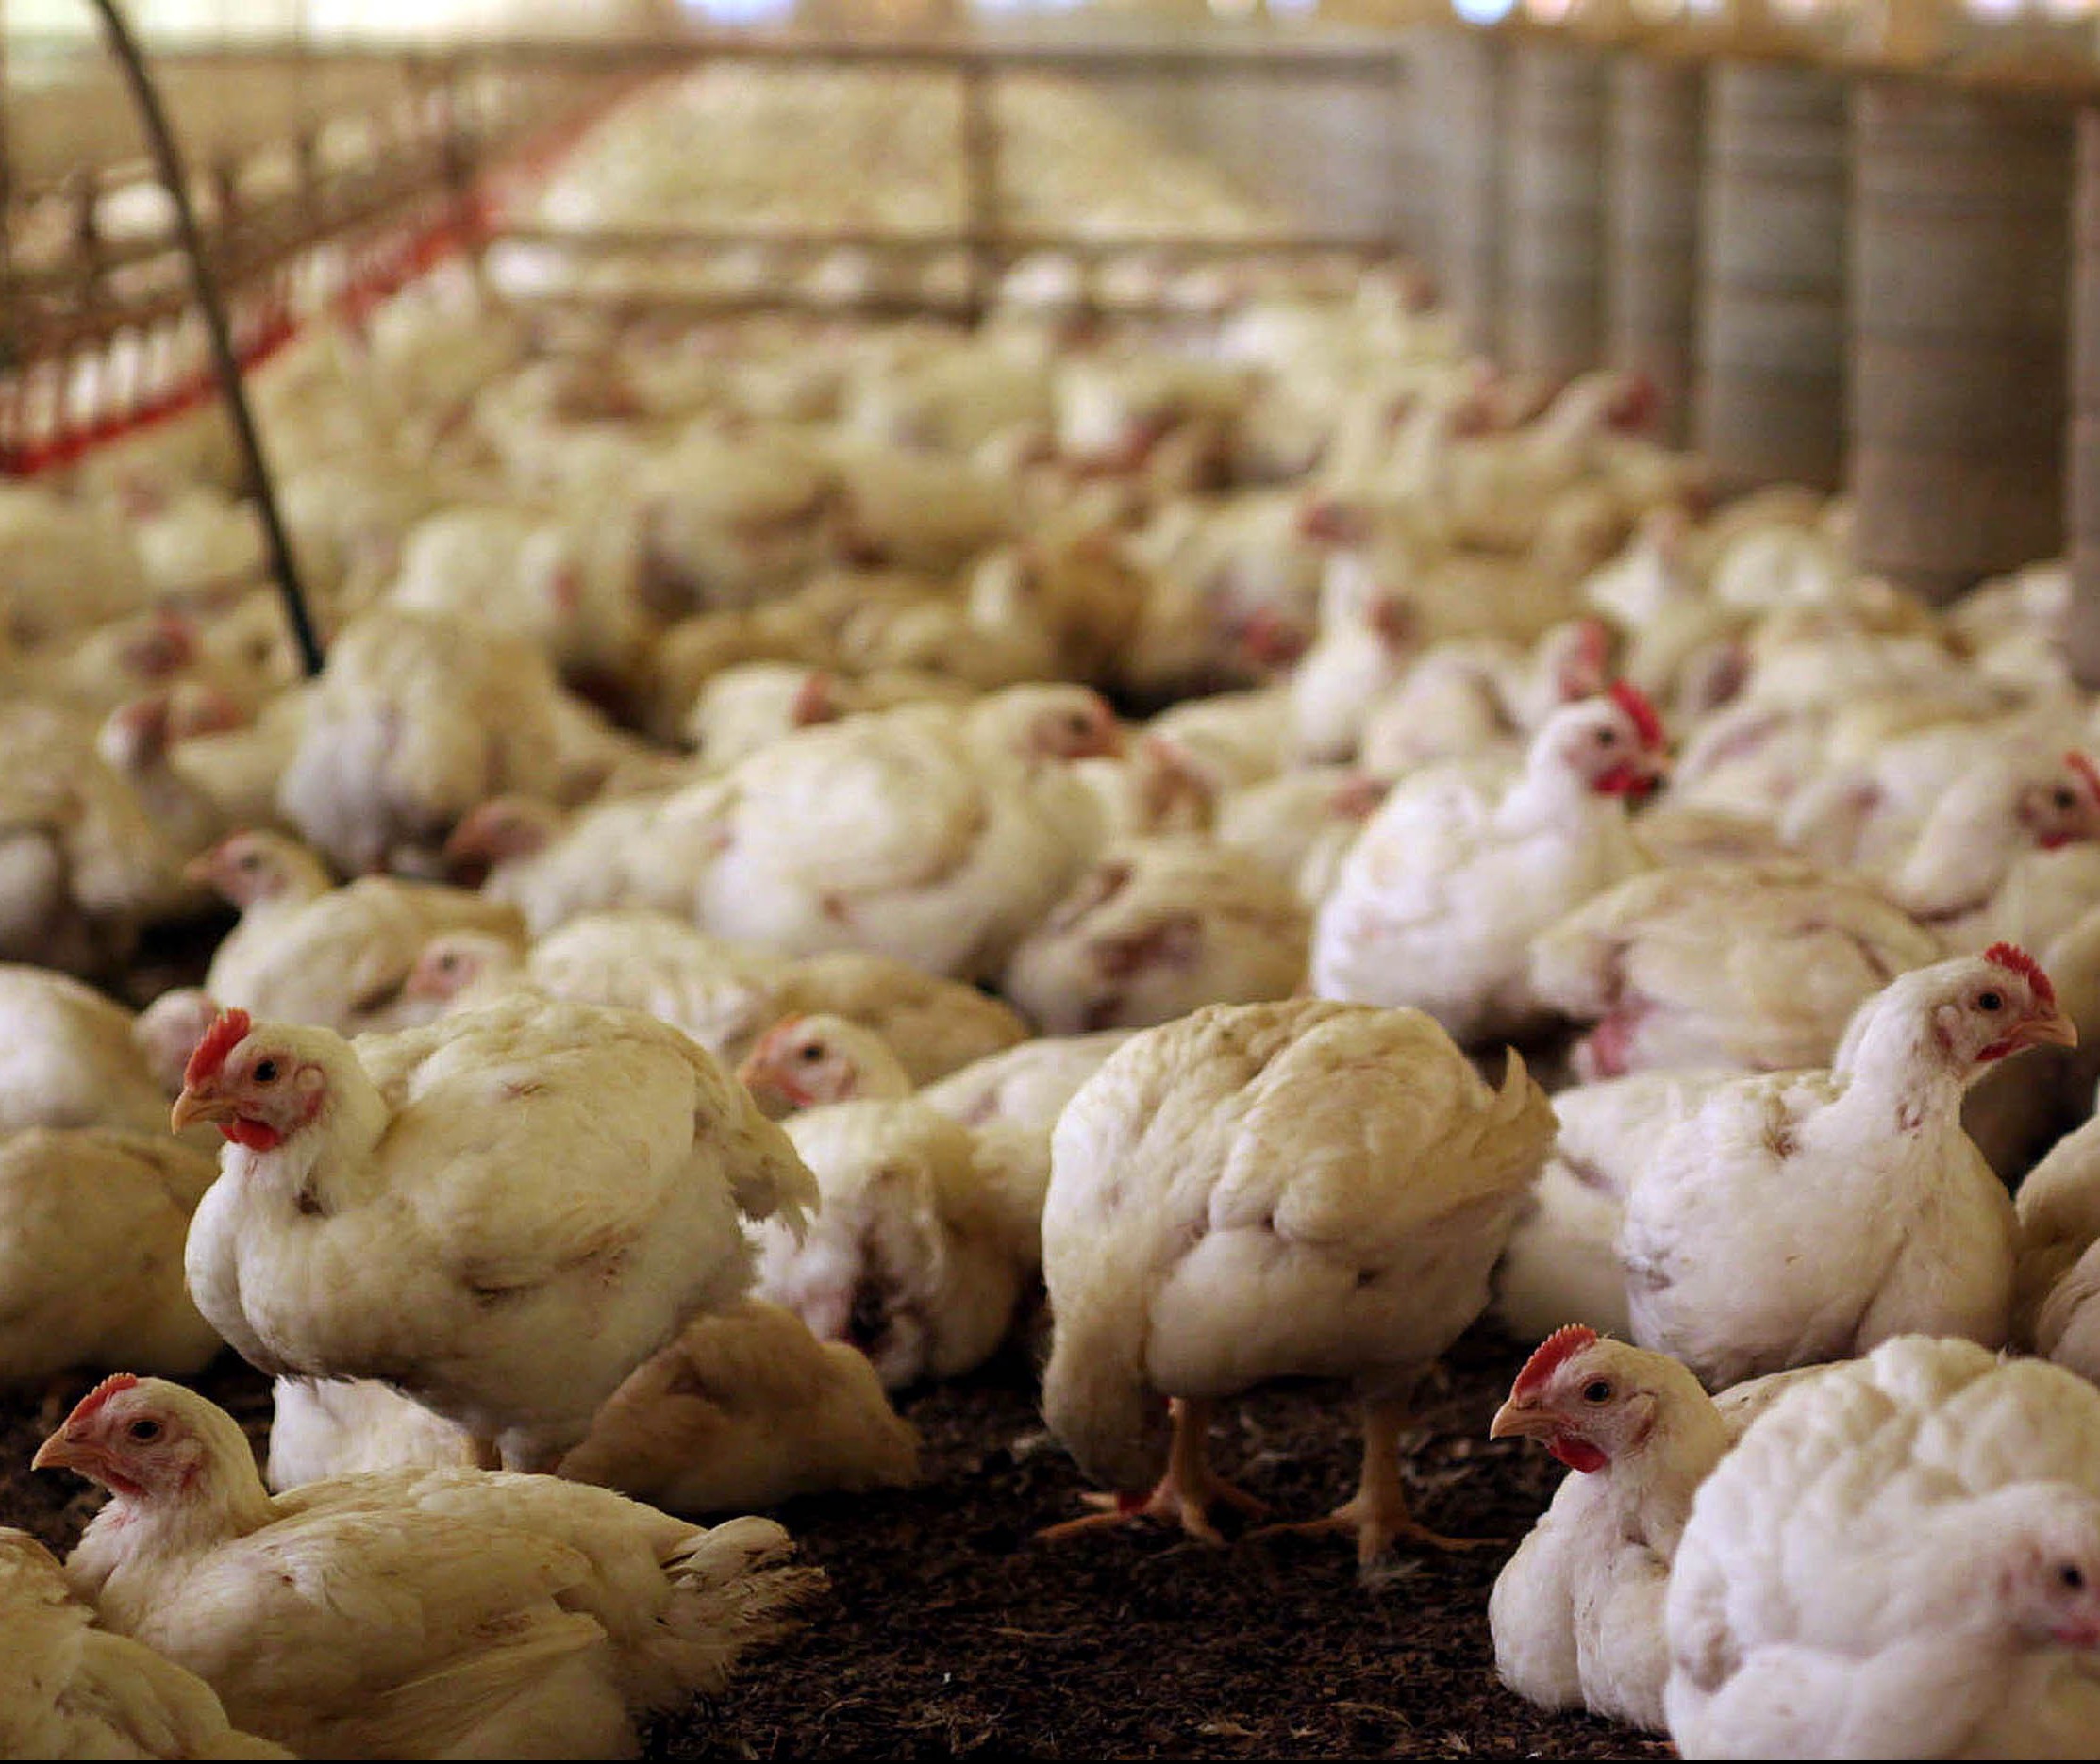 Riquezas geradas pela agricultura e avicultura no Sul do Brasil vai diminuir